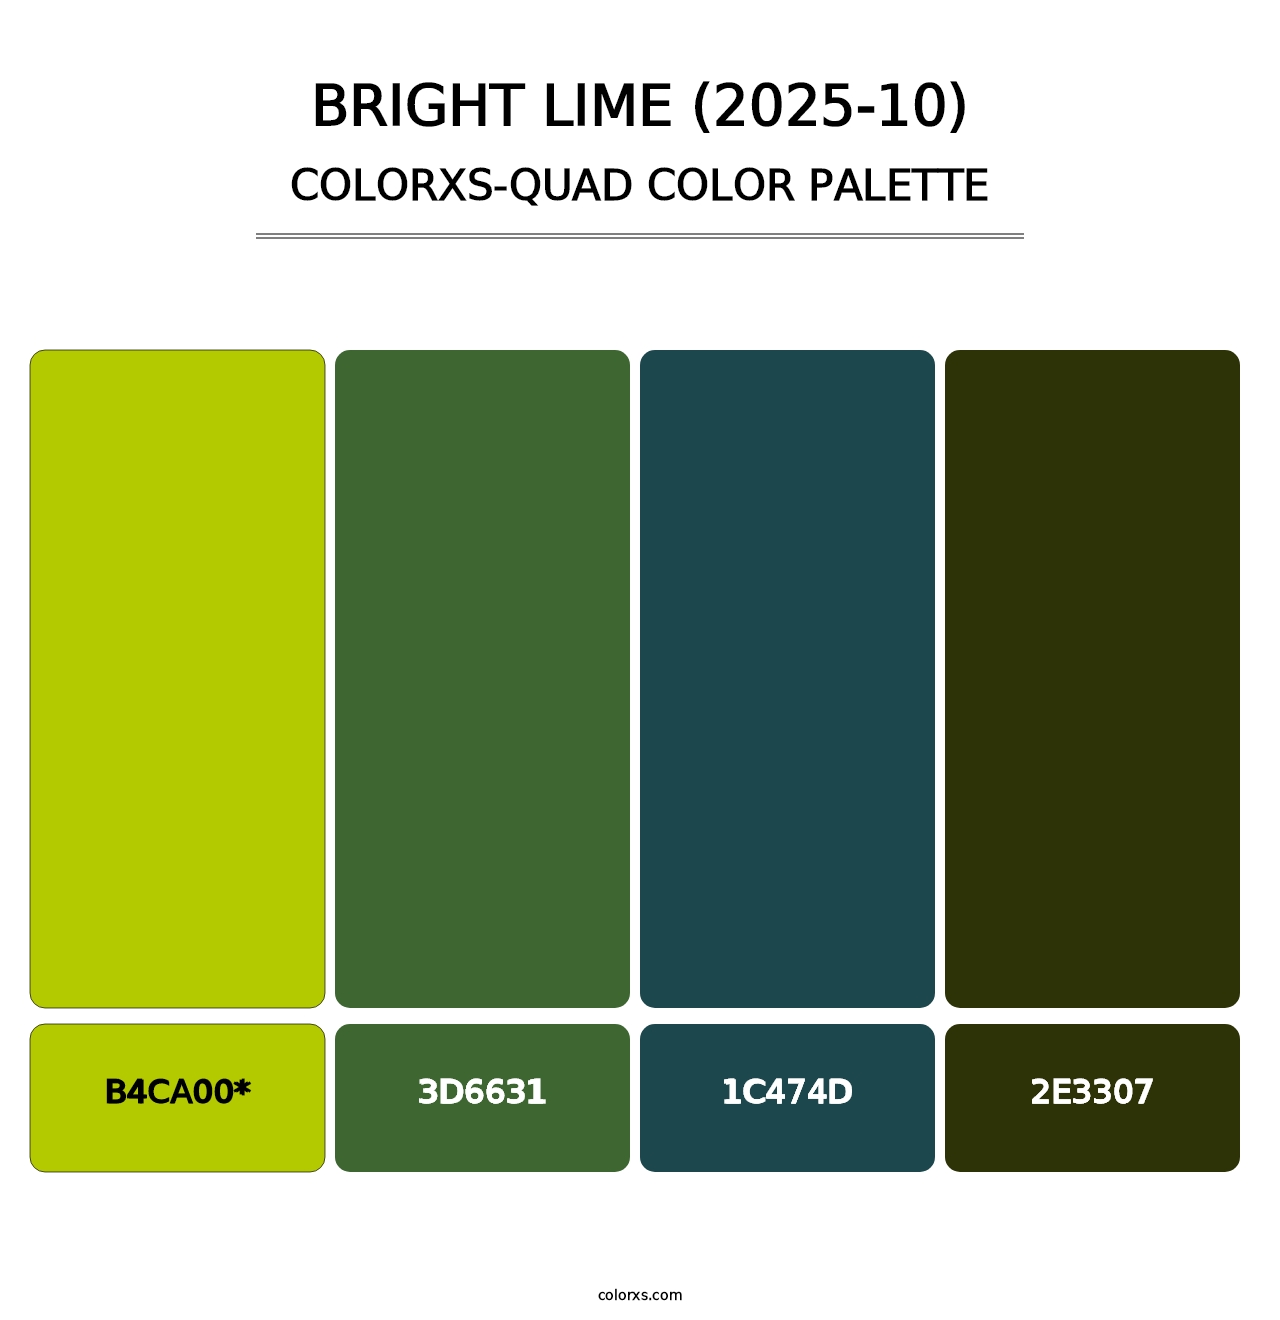 Bright Lime (2025-10) - Colorxs Quad Palette